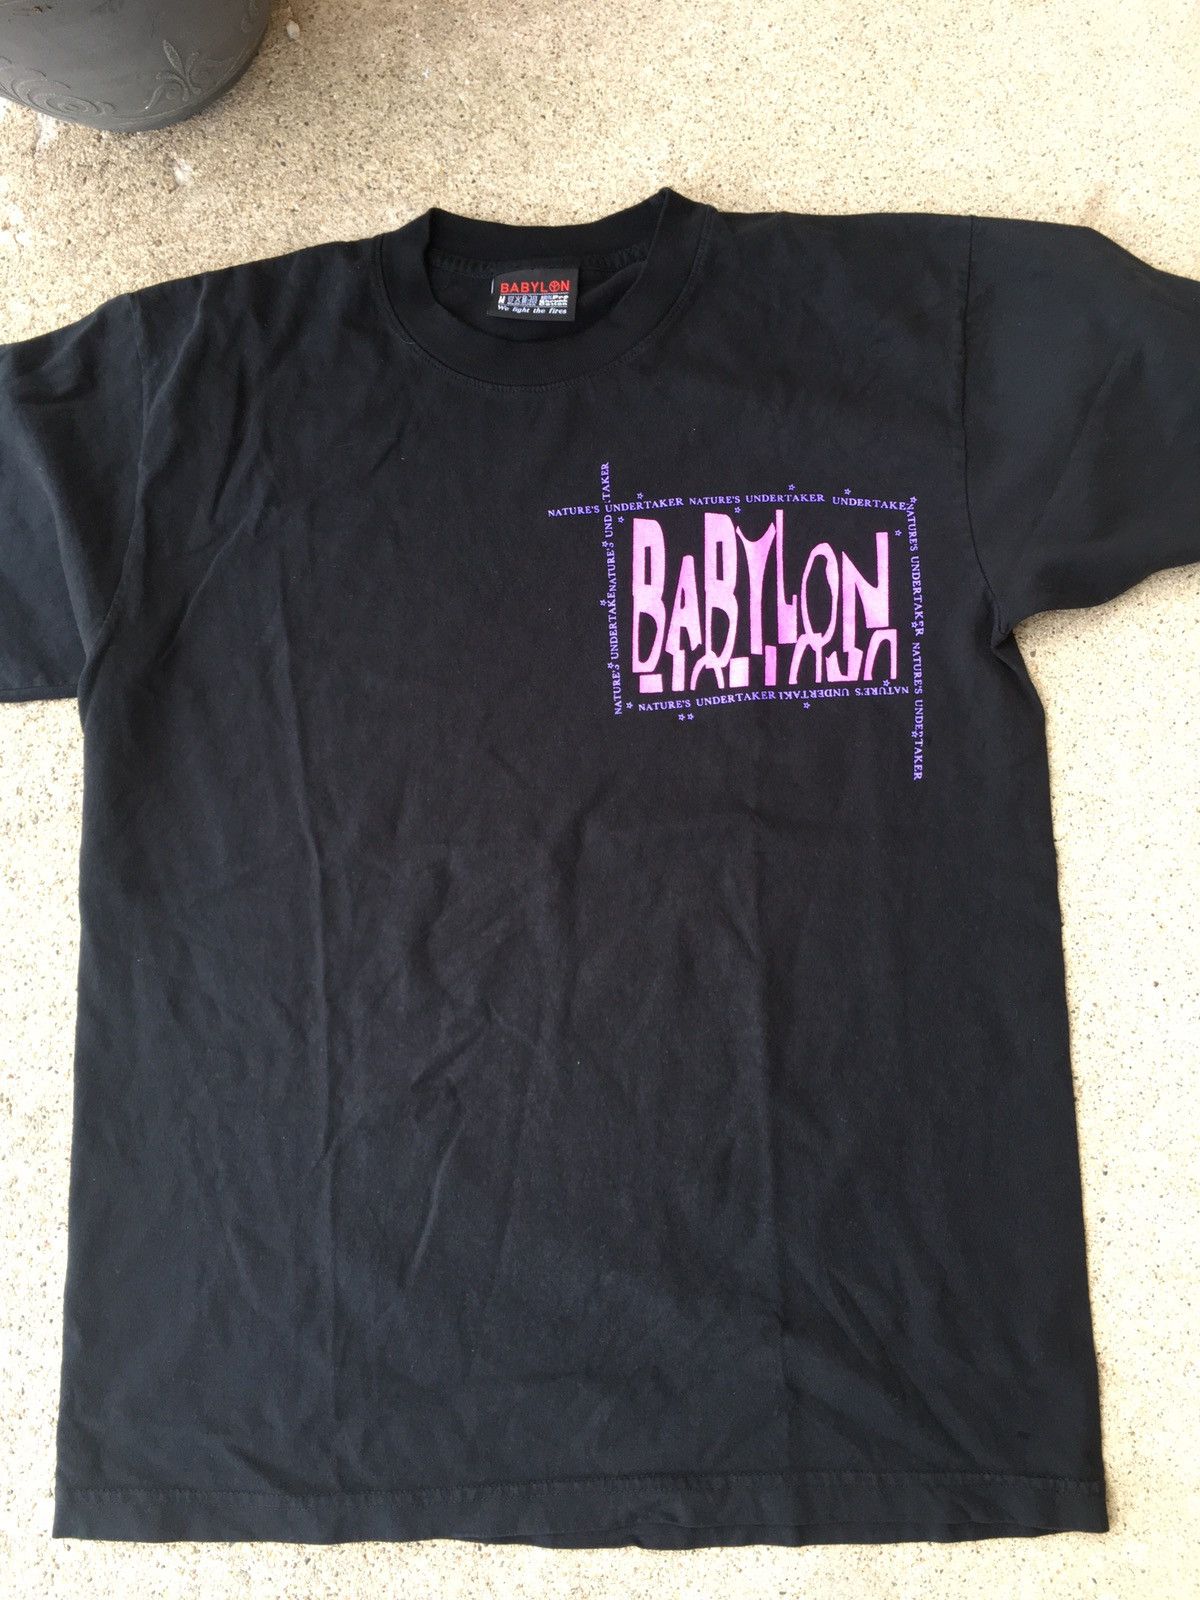 Babylon Babylon LA Undertaker shirt | Grailed